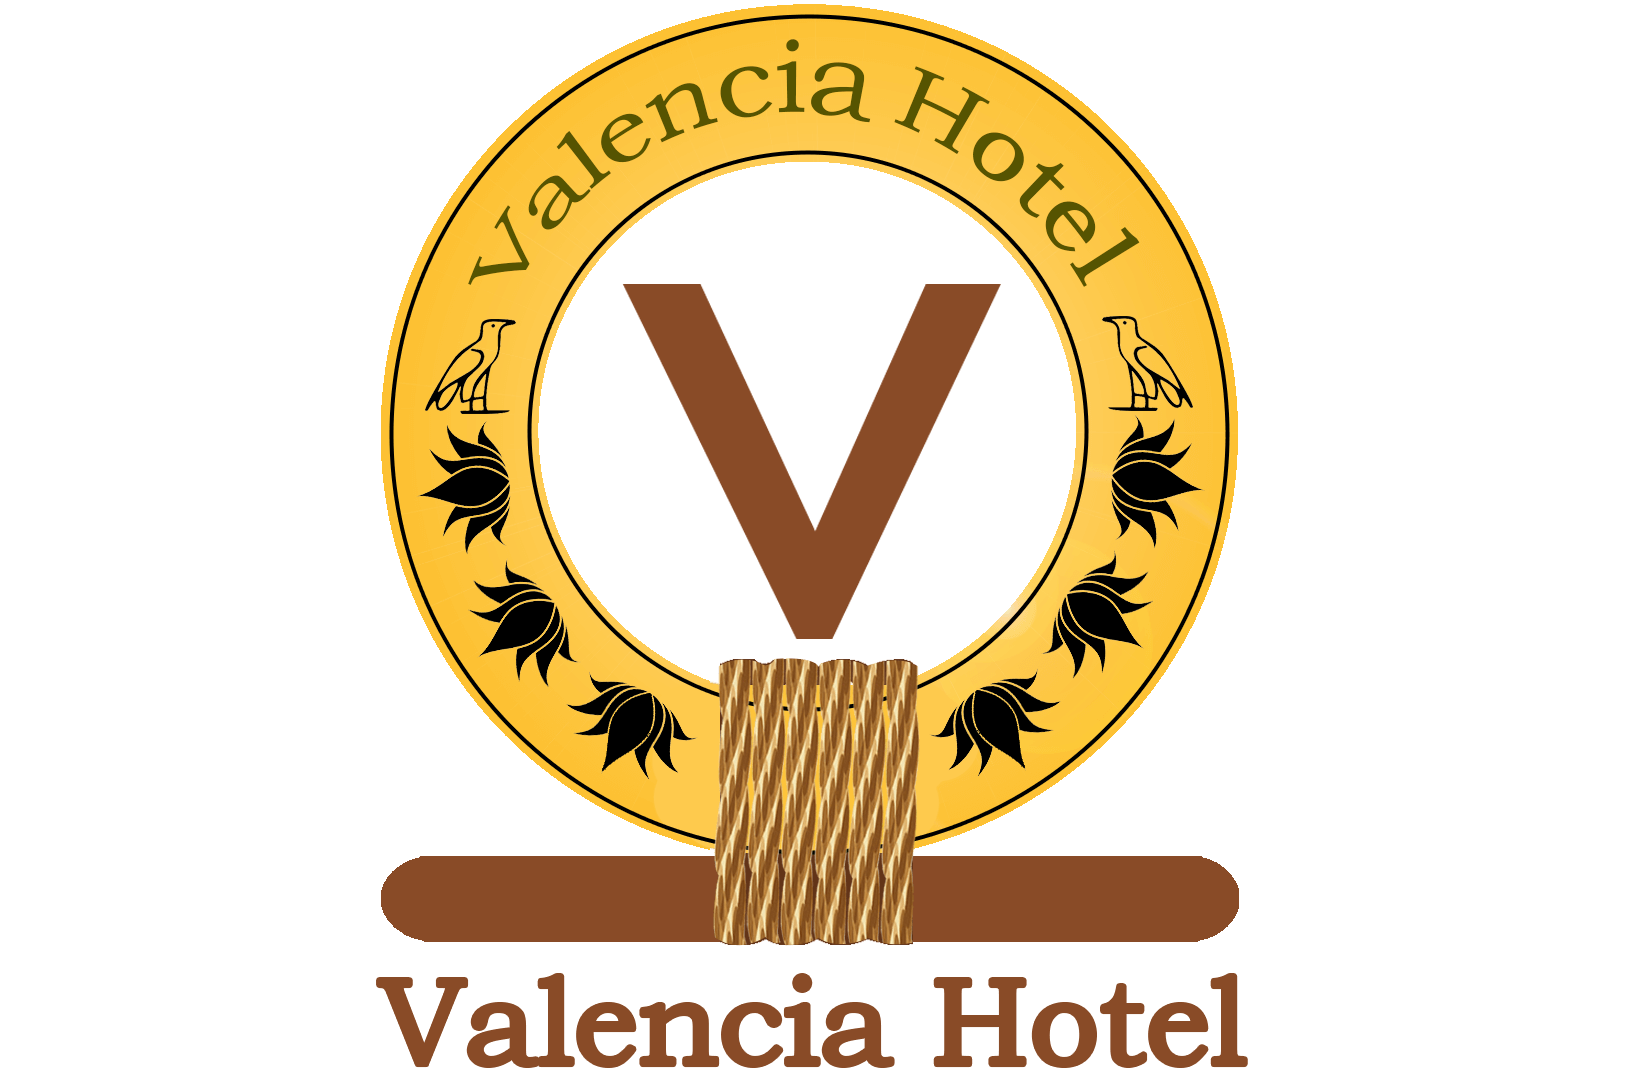 Valencia Hotel